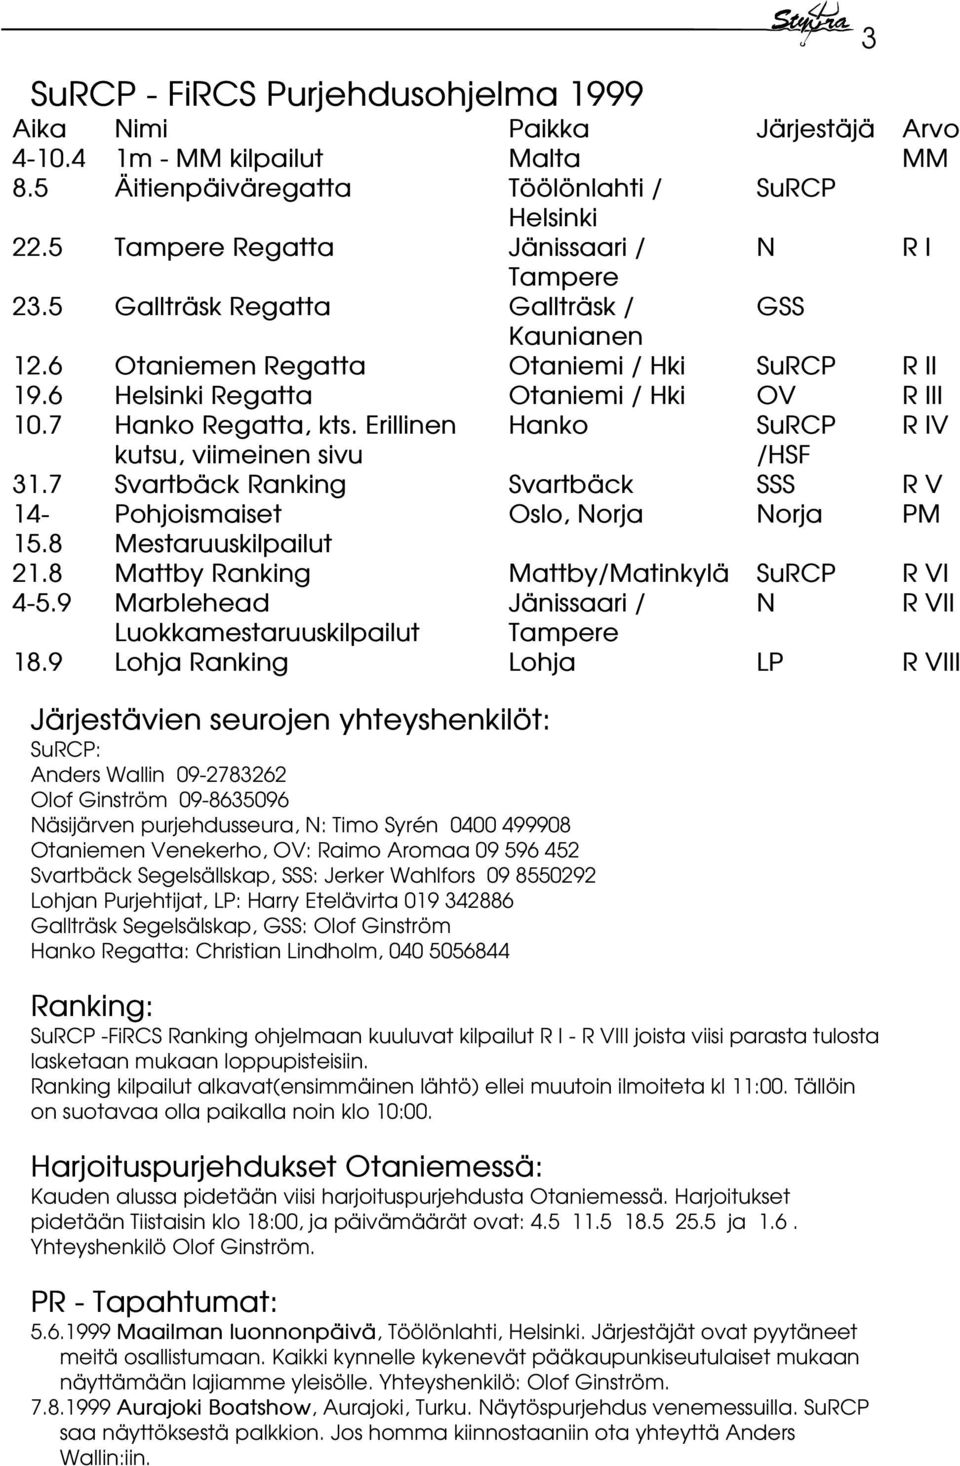 7 Svartbäck Ranking Svartbäck 14- Pohjoismaiset Oslo, Norja 15.8 Mestaruuskilpailut 21.8 Mattby Ranking Mattby/Matinkylä 4-5.9 Marblehead Jänissaari / Luokkamestaruuskilpailut Tampere 18.